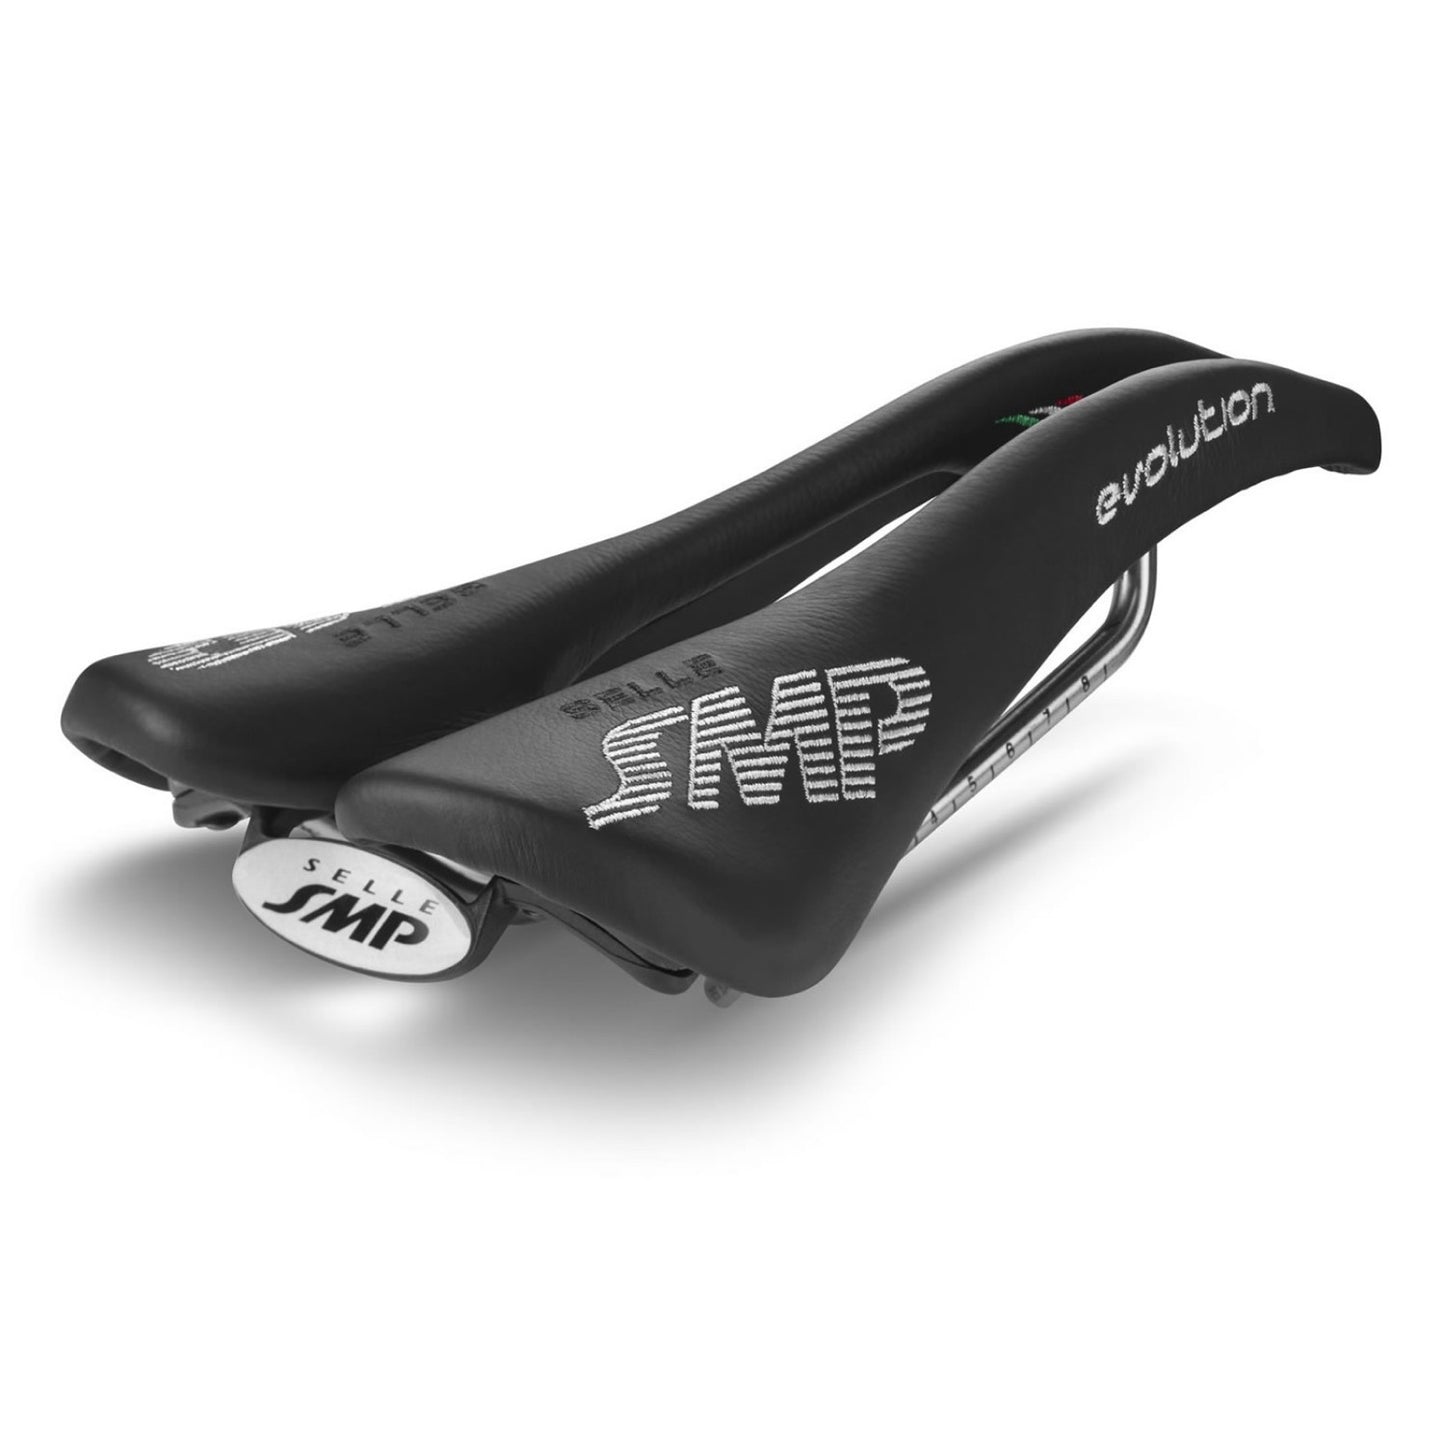 Selle SMP Evolution Saddle